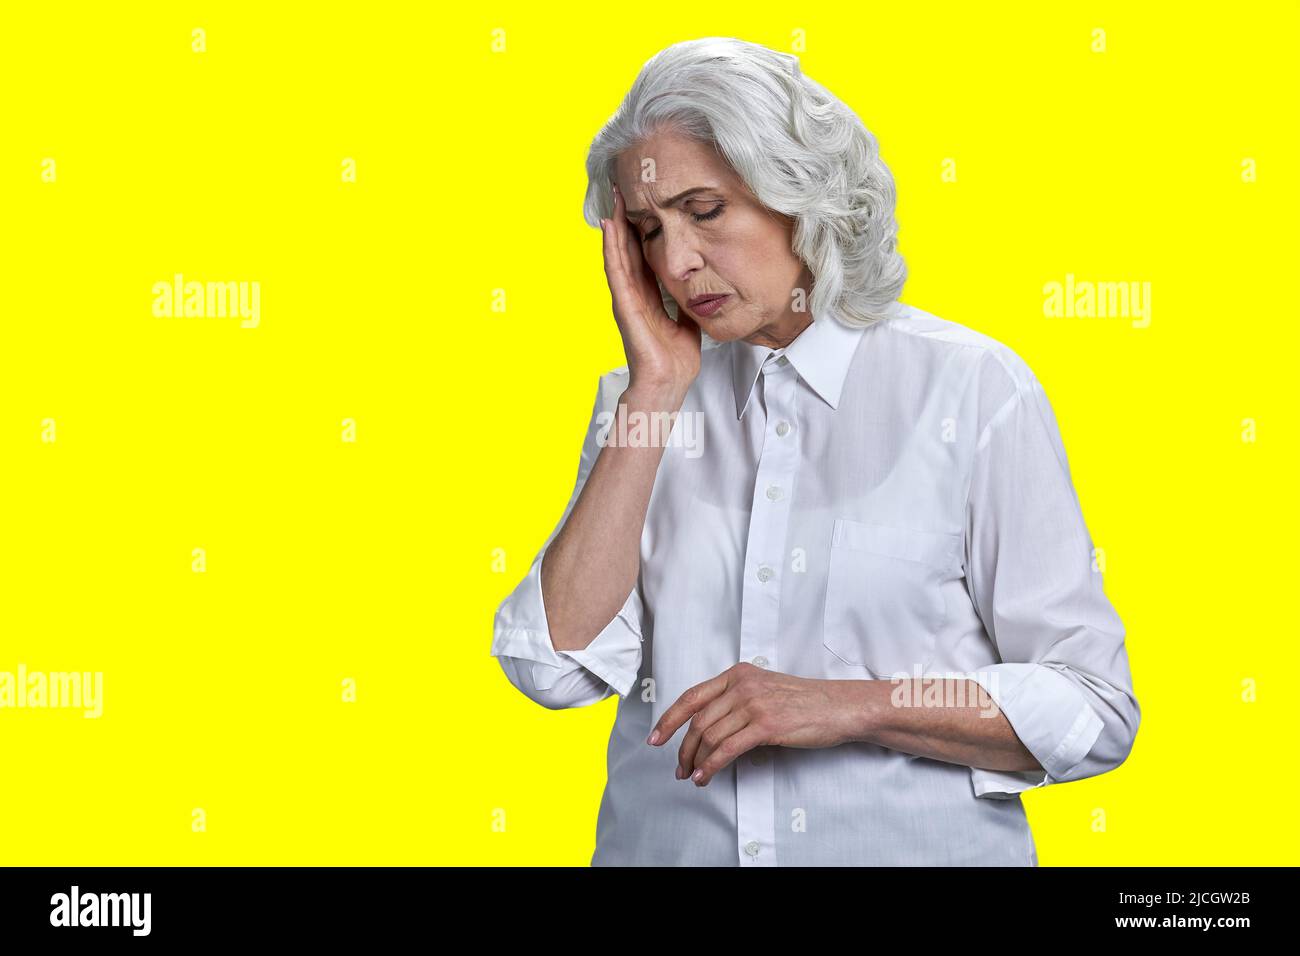 Mujer mayor estresada que sufre de migraña sobre fondo amarillo. Concepto de dolor de cabeza y problemas de salud. Foto de stock